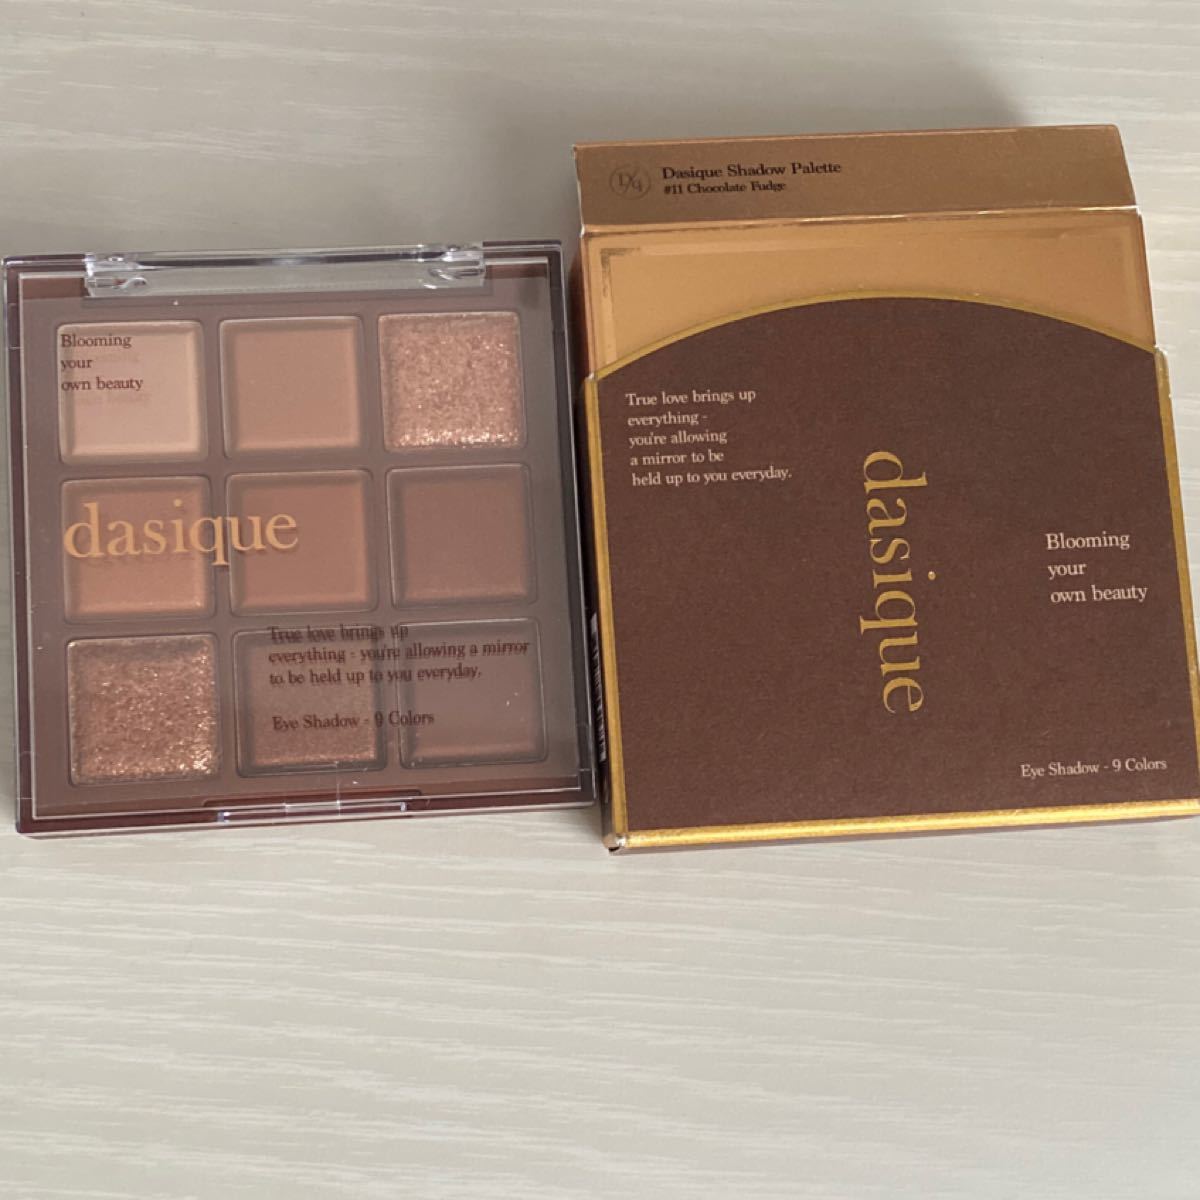 デイジーク (dasique) シャドウパレット Shadow Palette #11 Chocolate Fudge 